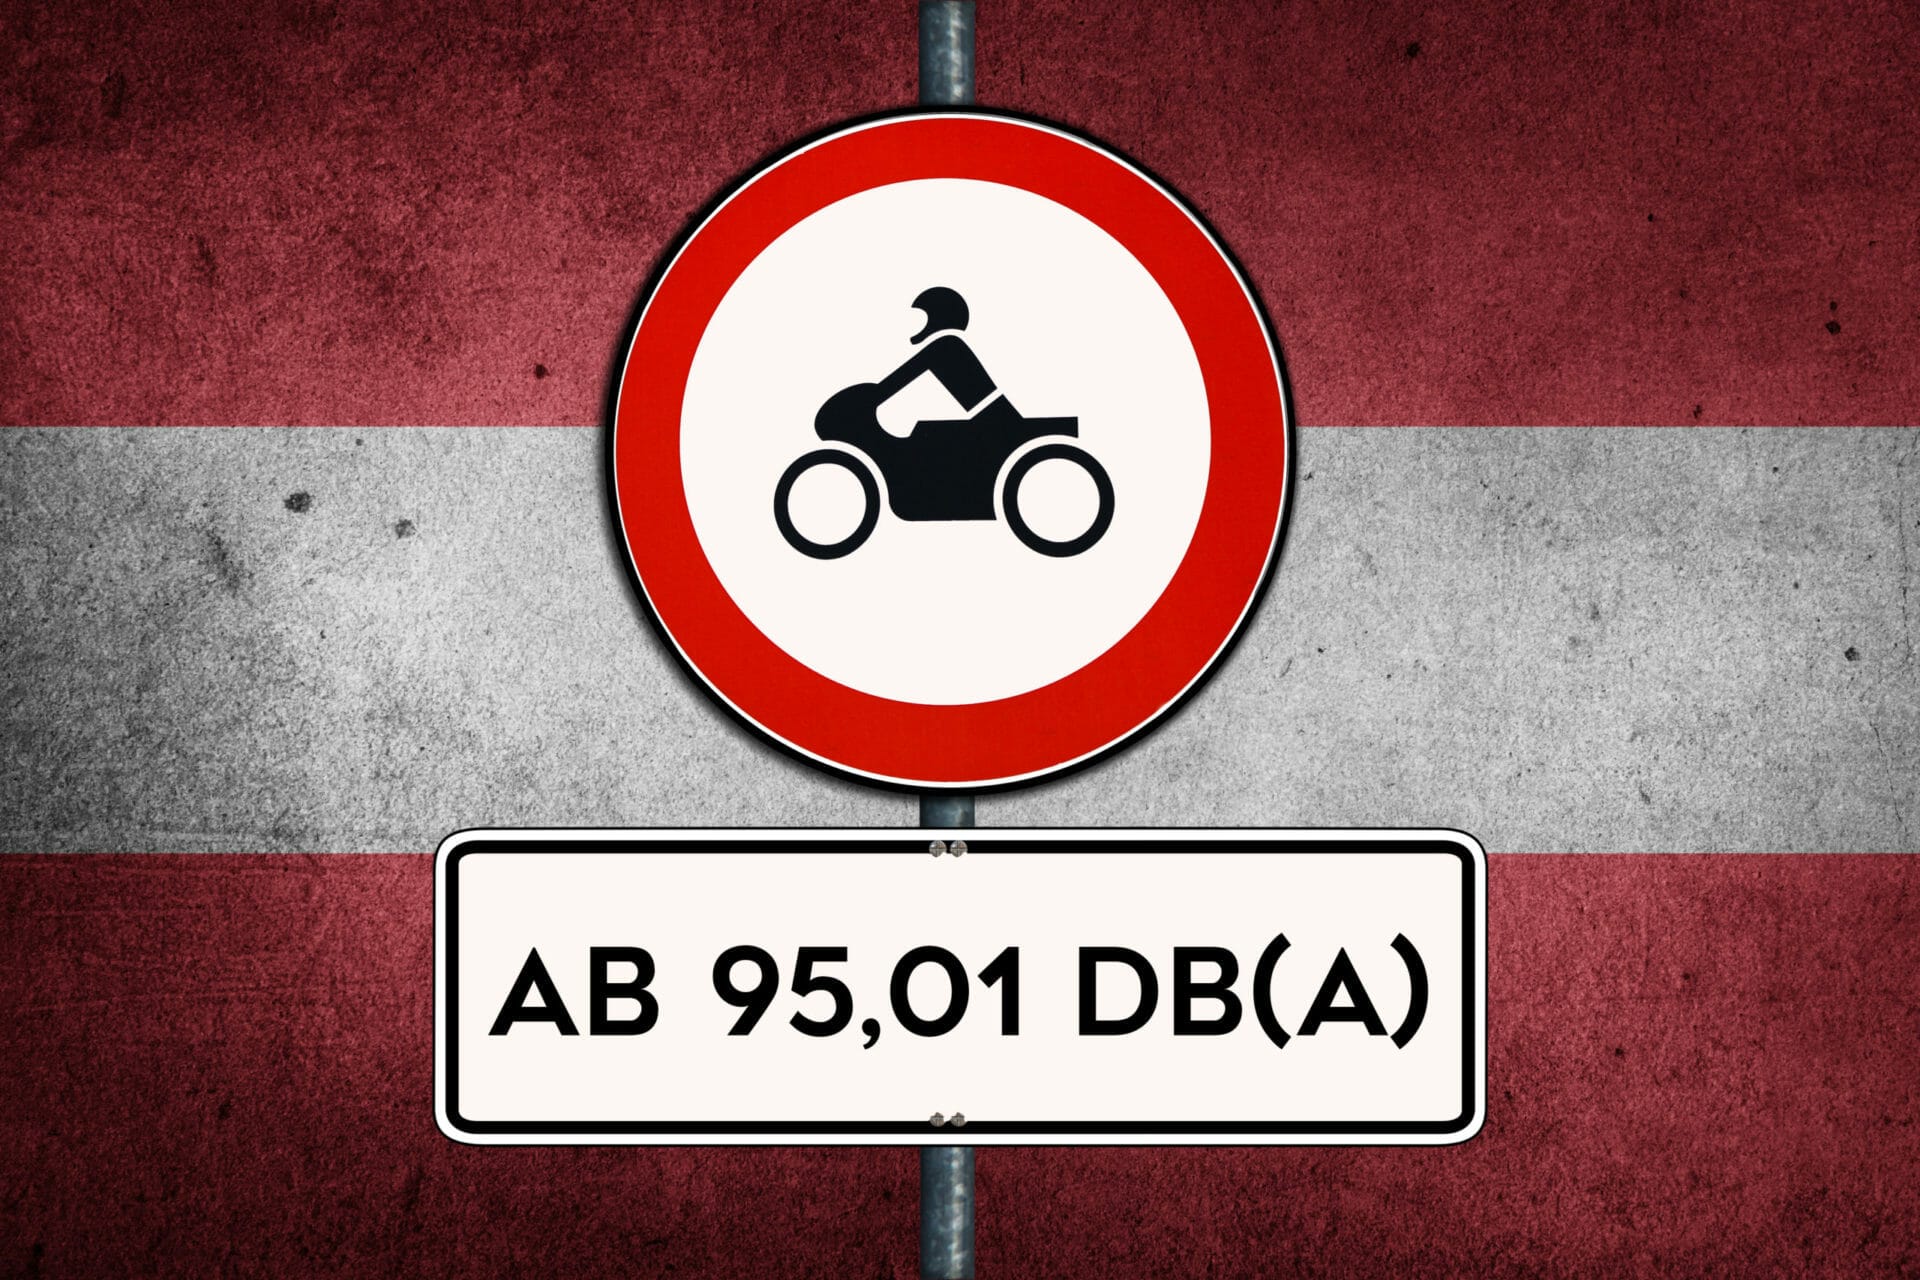 Kuriose db-Regel in Tirol – unterschiedliche Ausnahmen für ältere Motorräder
- auch in der MOTORRAD NACHRICHTEN APP